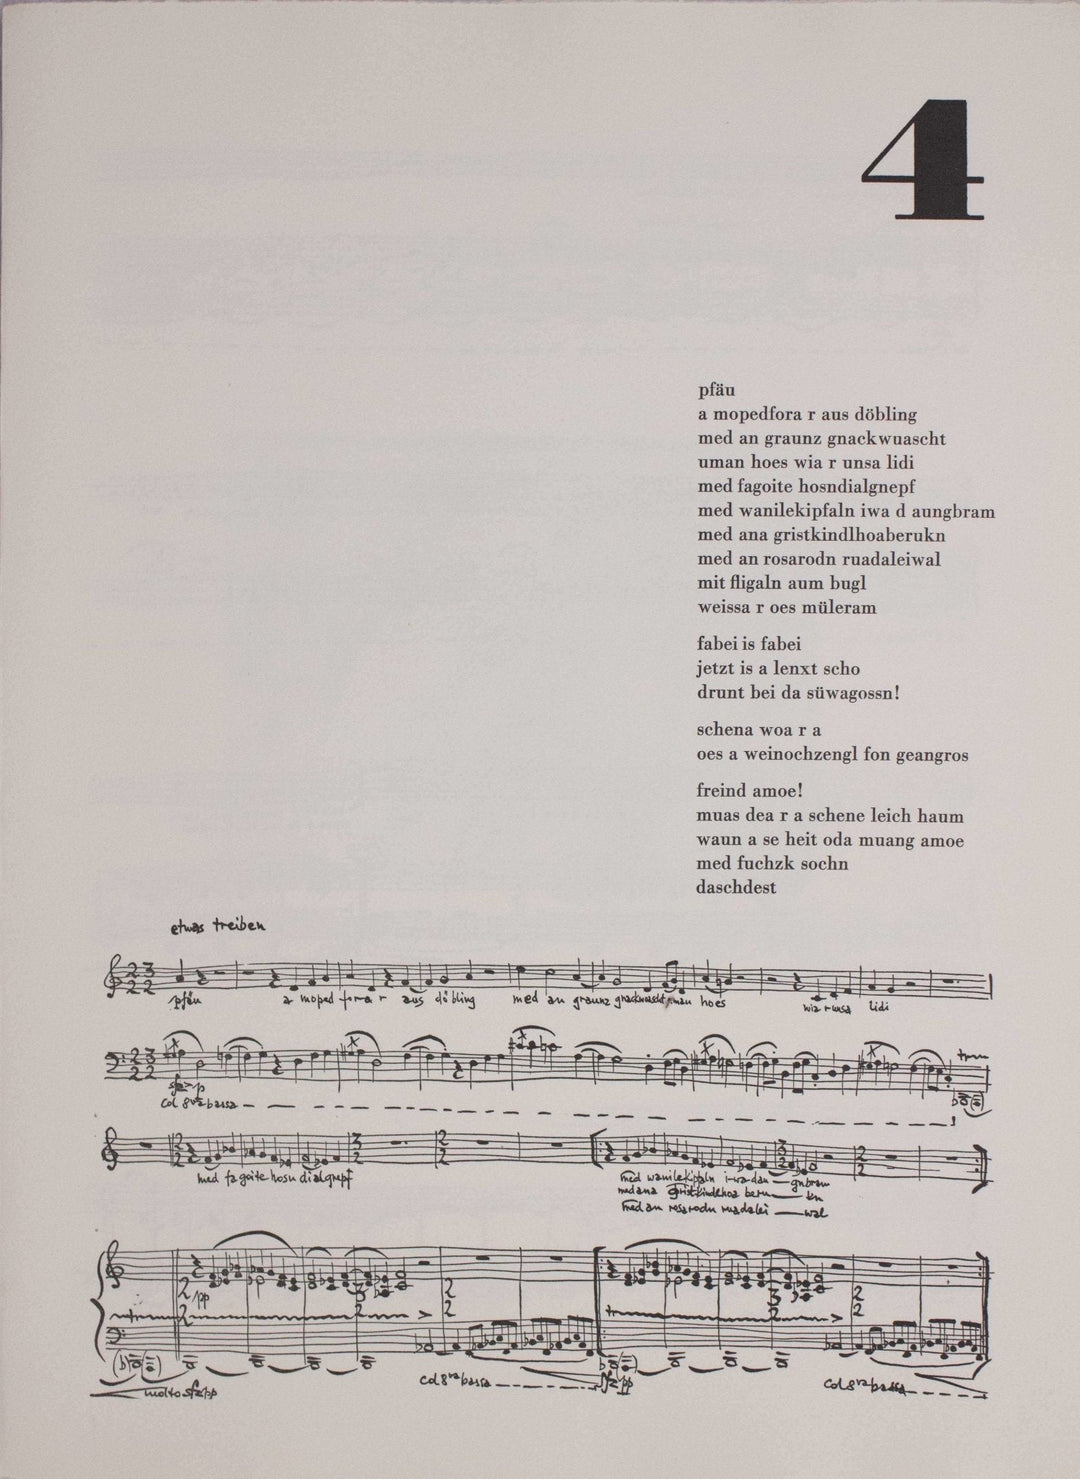 KORAB Karl, Fuenf wiener lieder 1970, Libro d'Artista - EmporiumArt